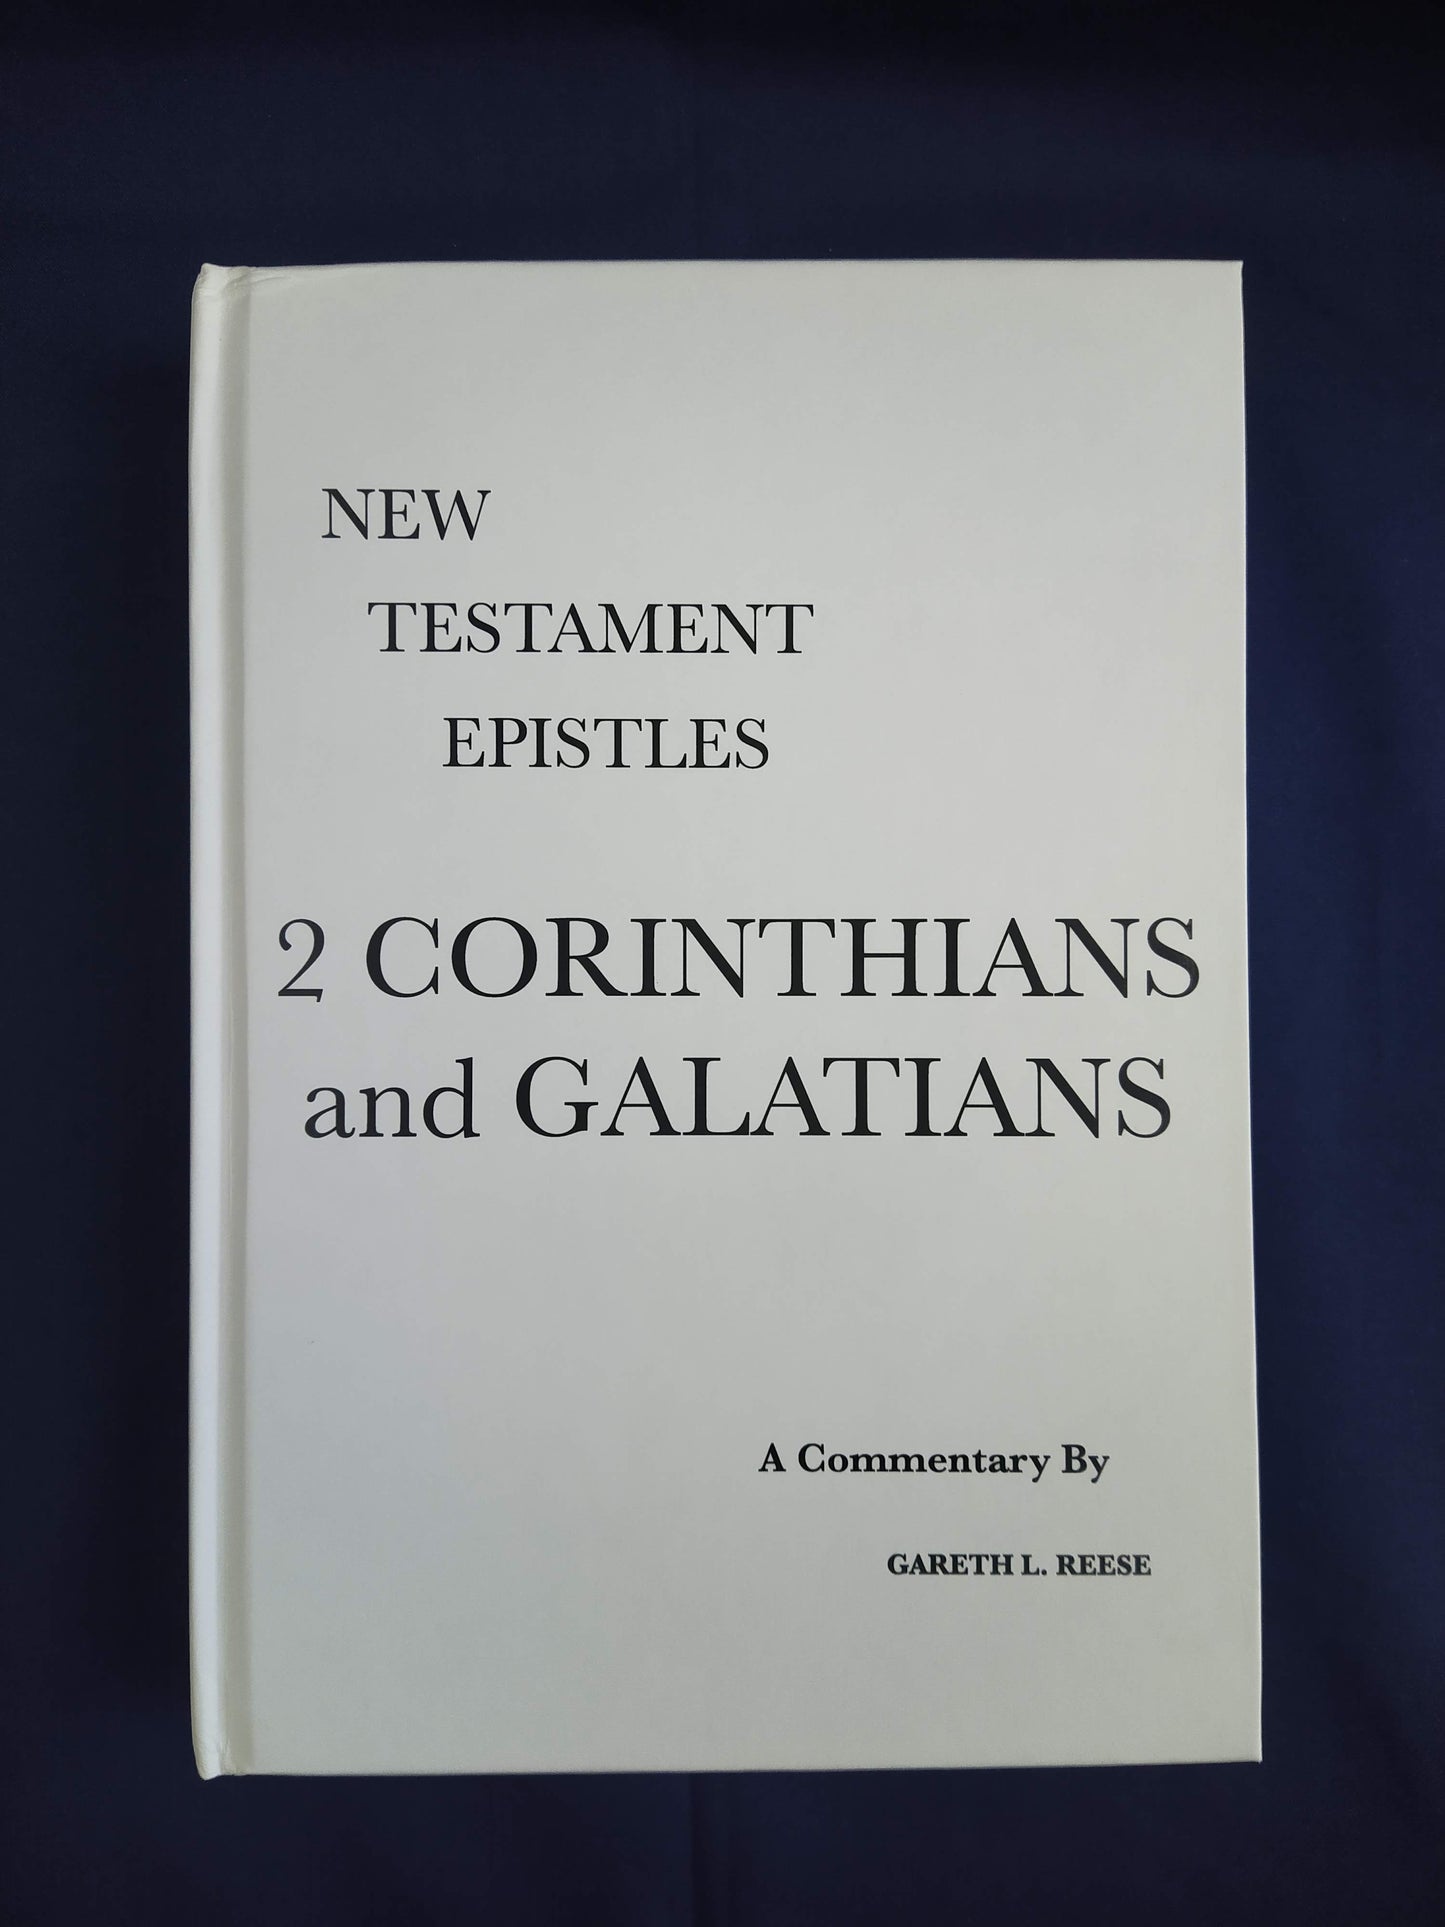 2 Corinthians and Galatians